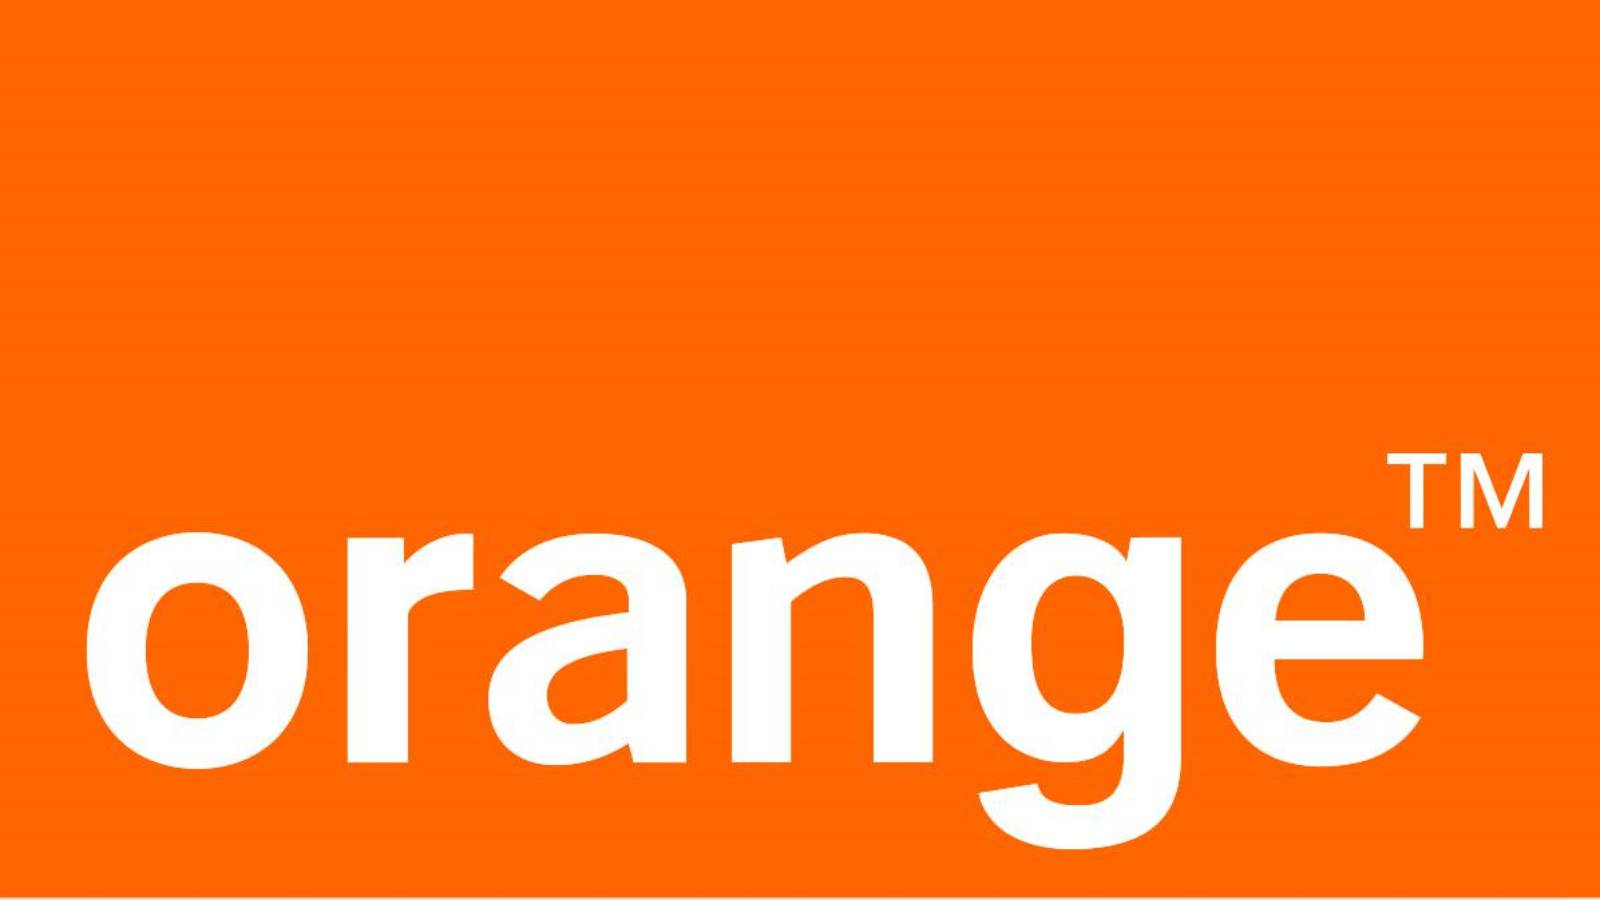 12 månader GRATIS Orange överraskar operatören av rumänska kunder